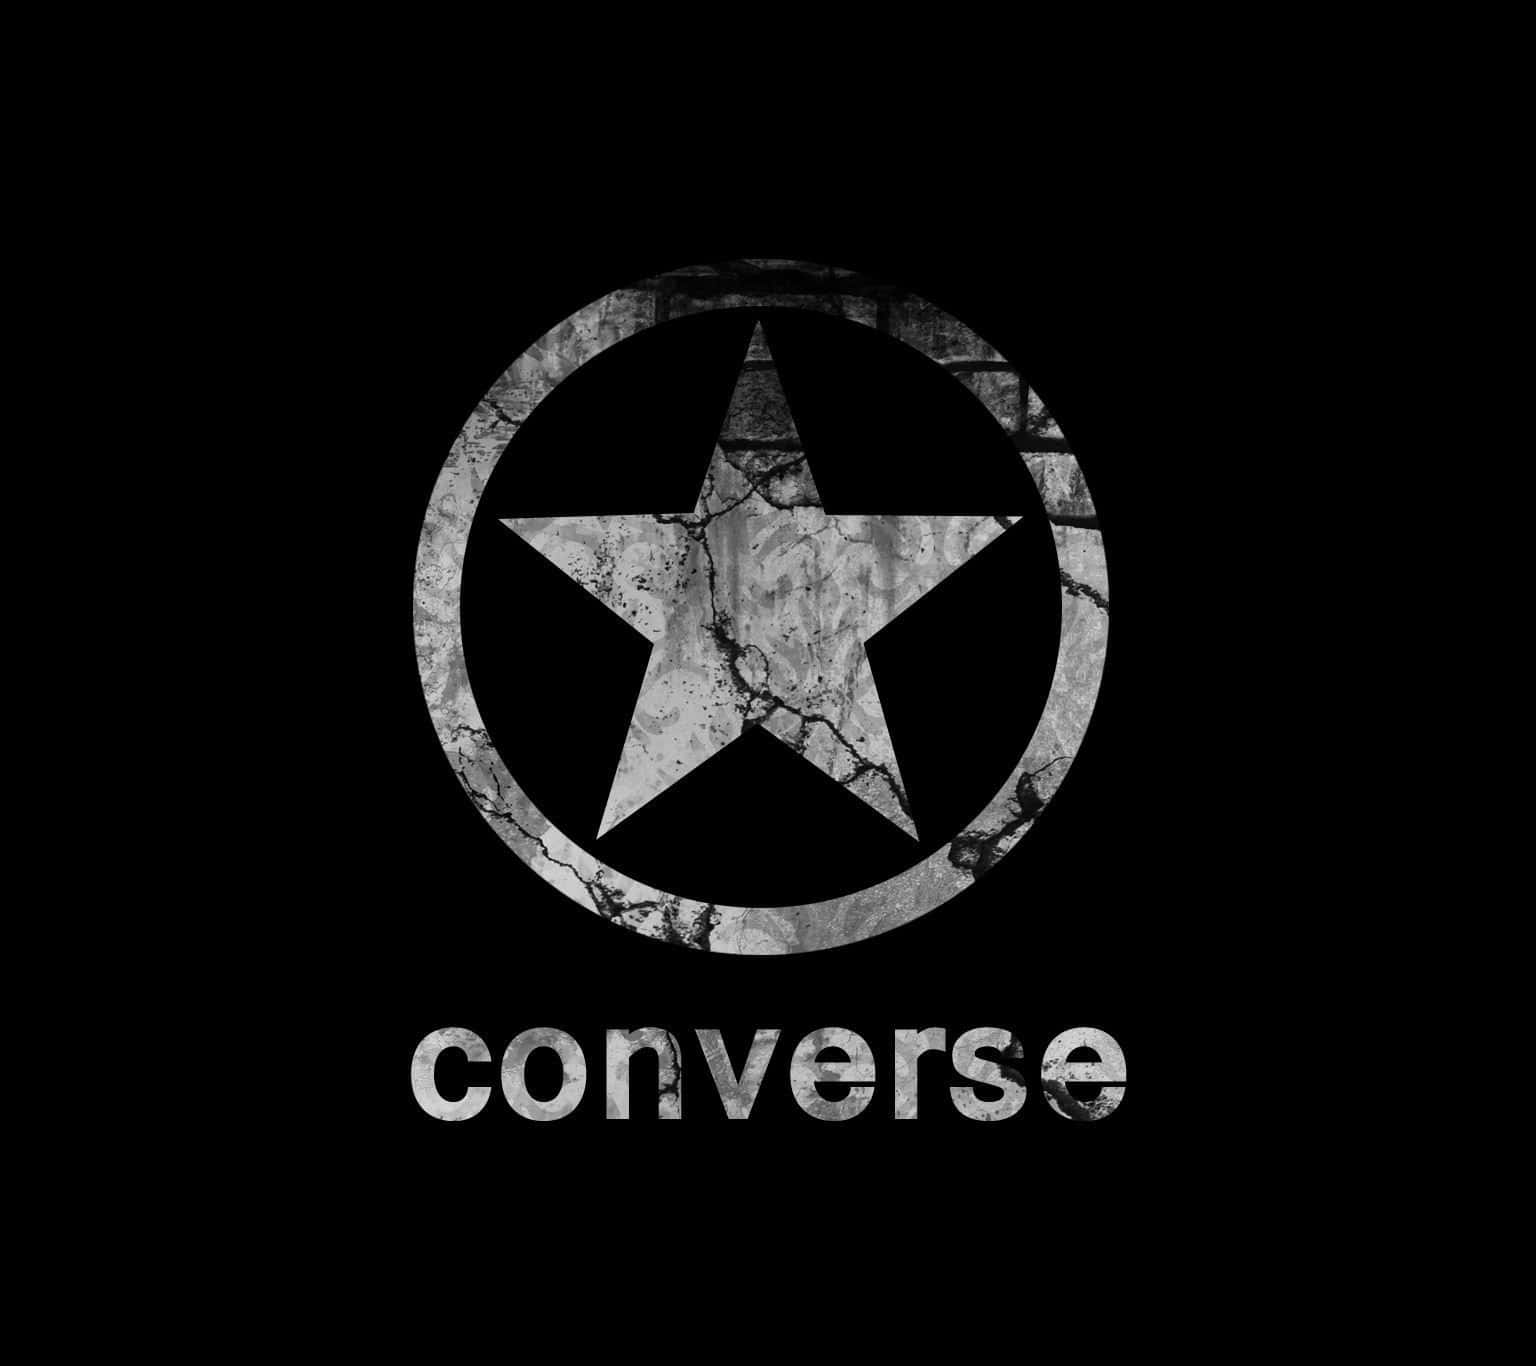 Hintergrundmit Converse-logo